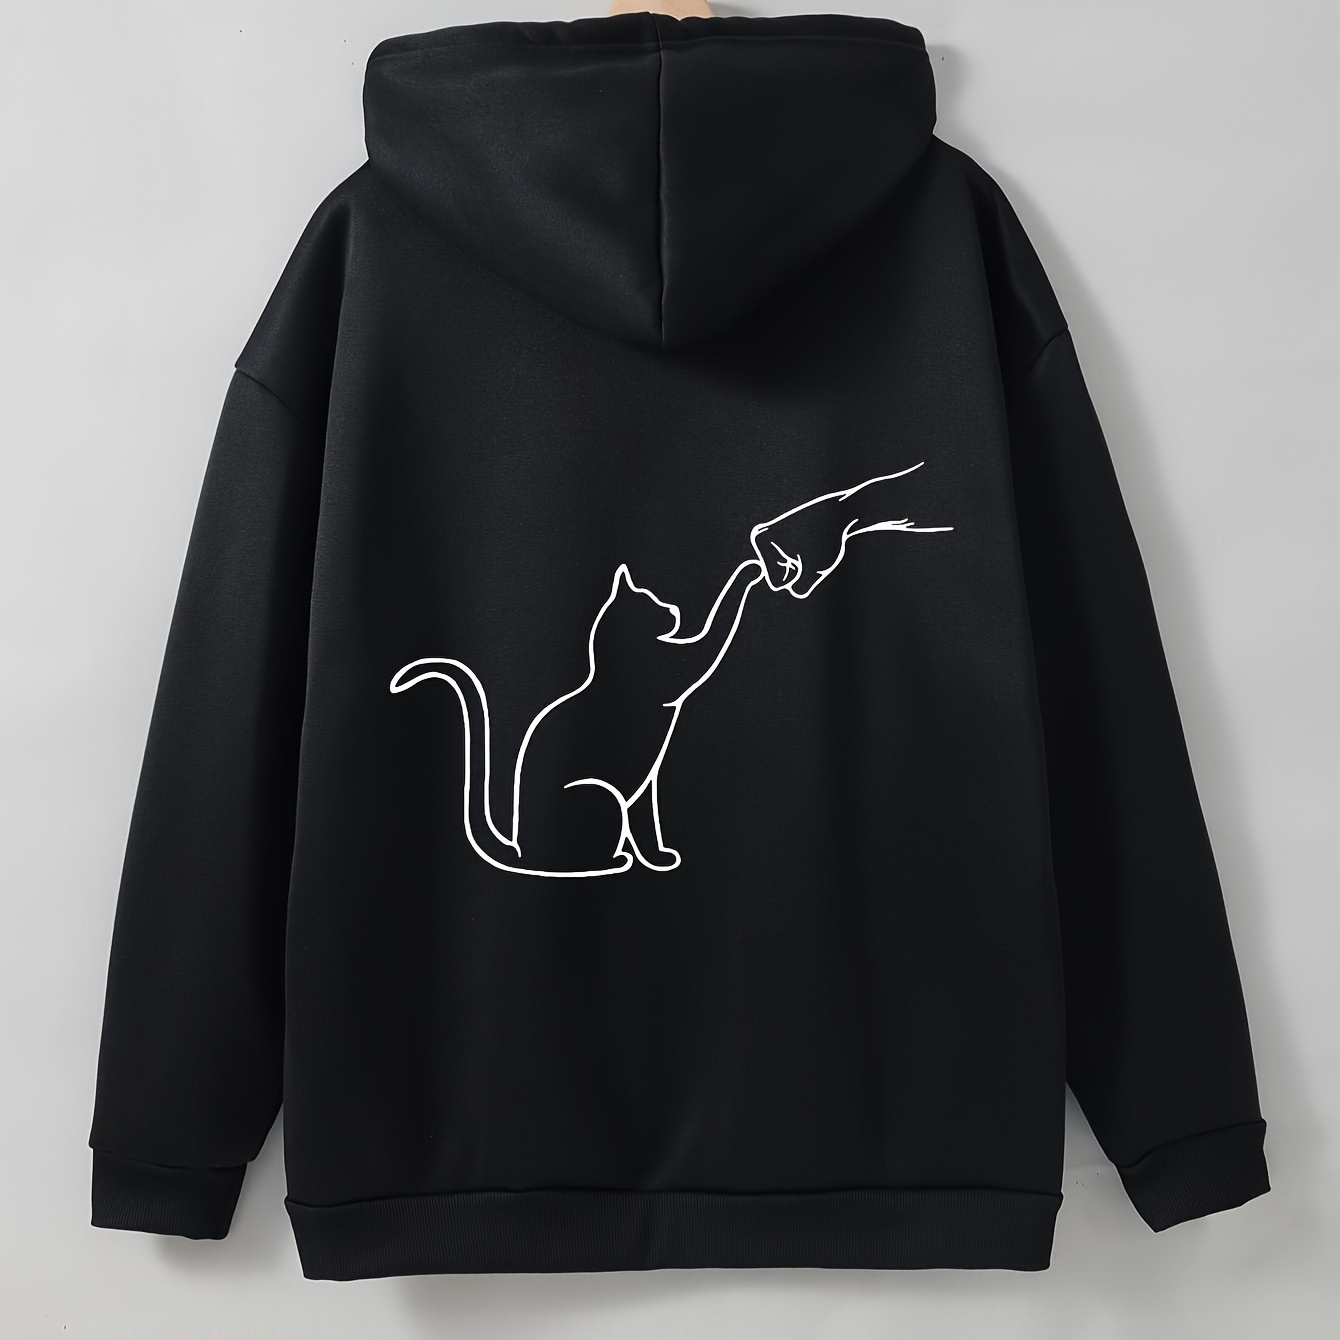 

Cute Cat Print Hoodie, Casual Drawstring Kangaroo Pocket Hoodies Sweatshirt, Women's Clothing